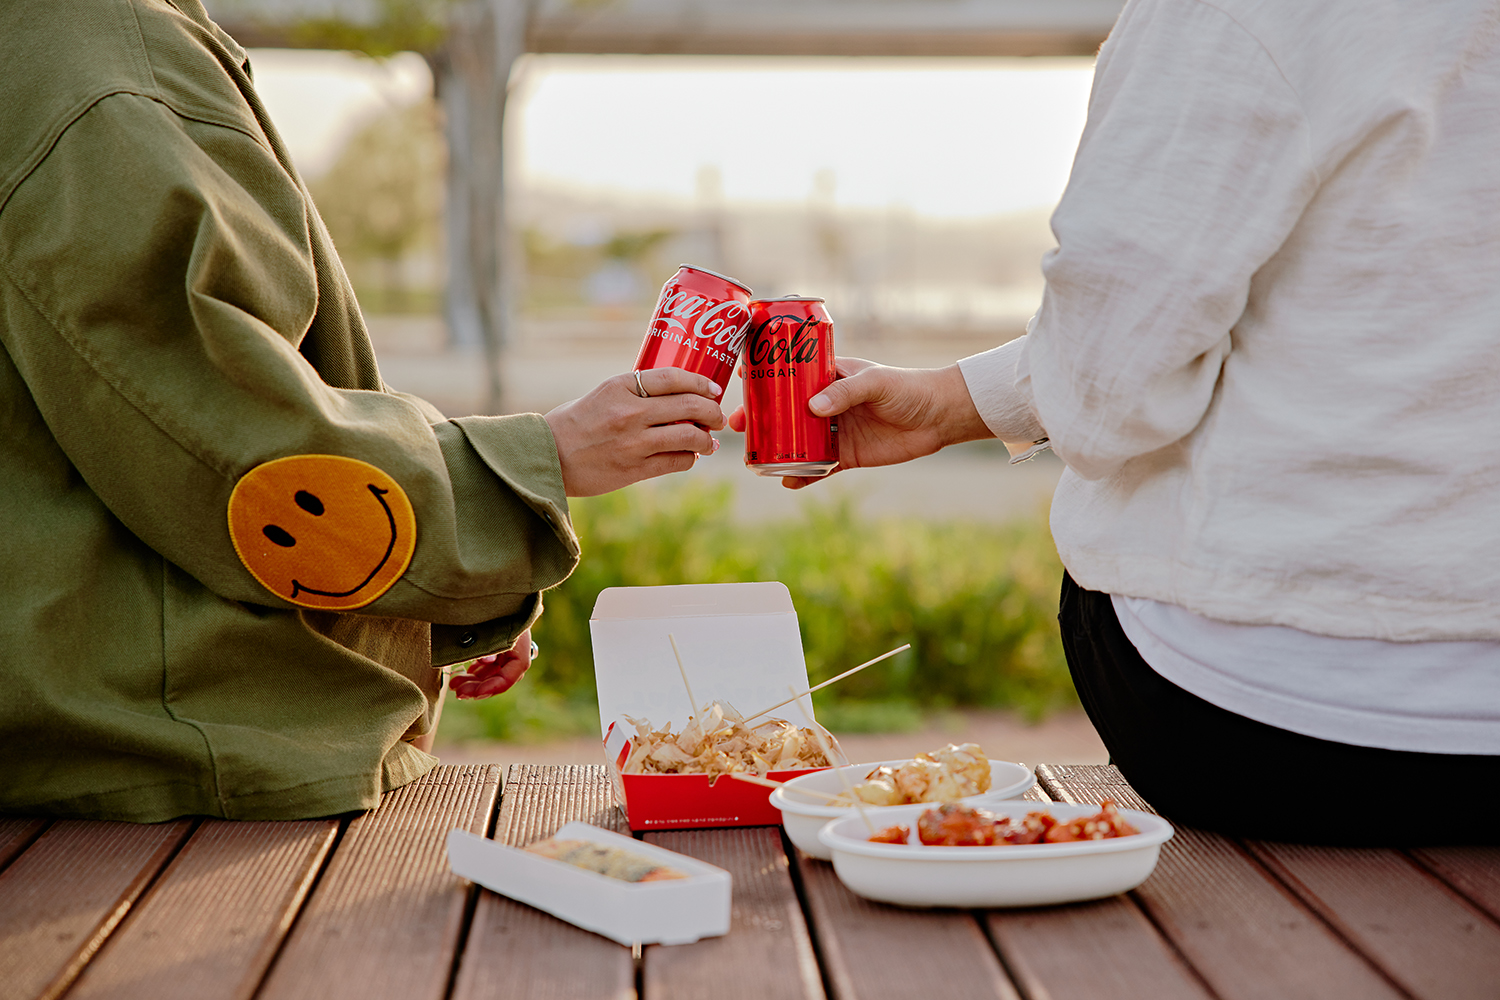 데크 위에 야시장 음식을 올려놓고 친구 두 명이서 코카-콜라와 코카-콜라 제로 캔을 건배하는 모습이 담겨있는 이미지이다.